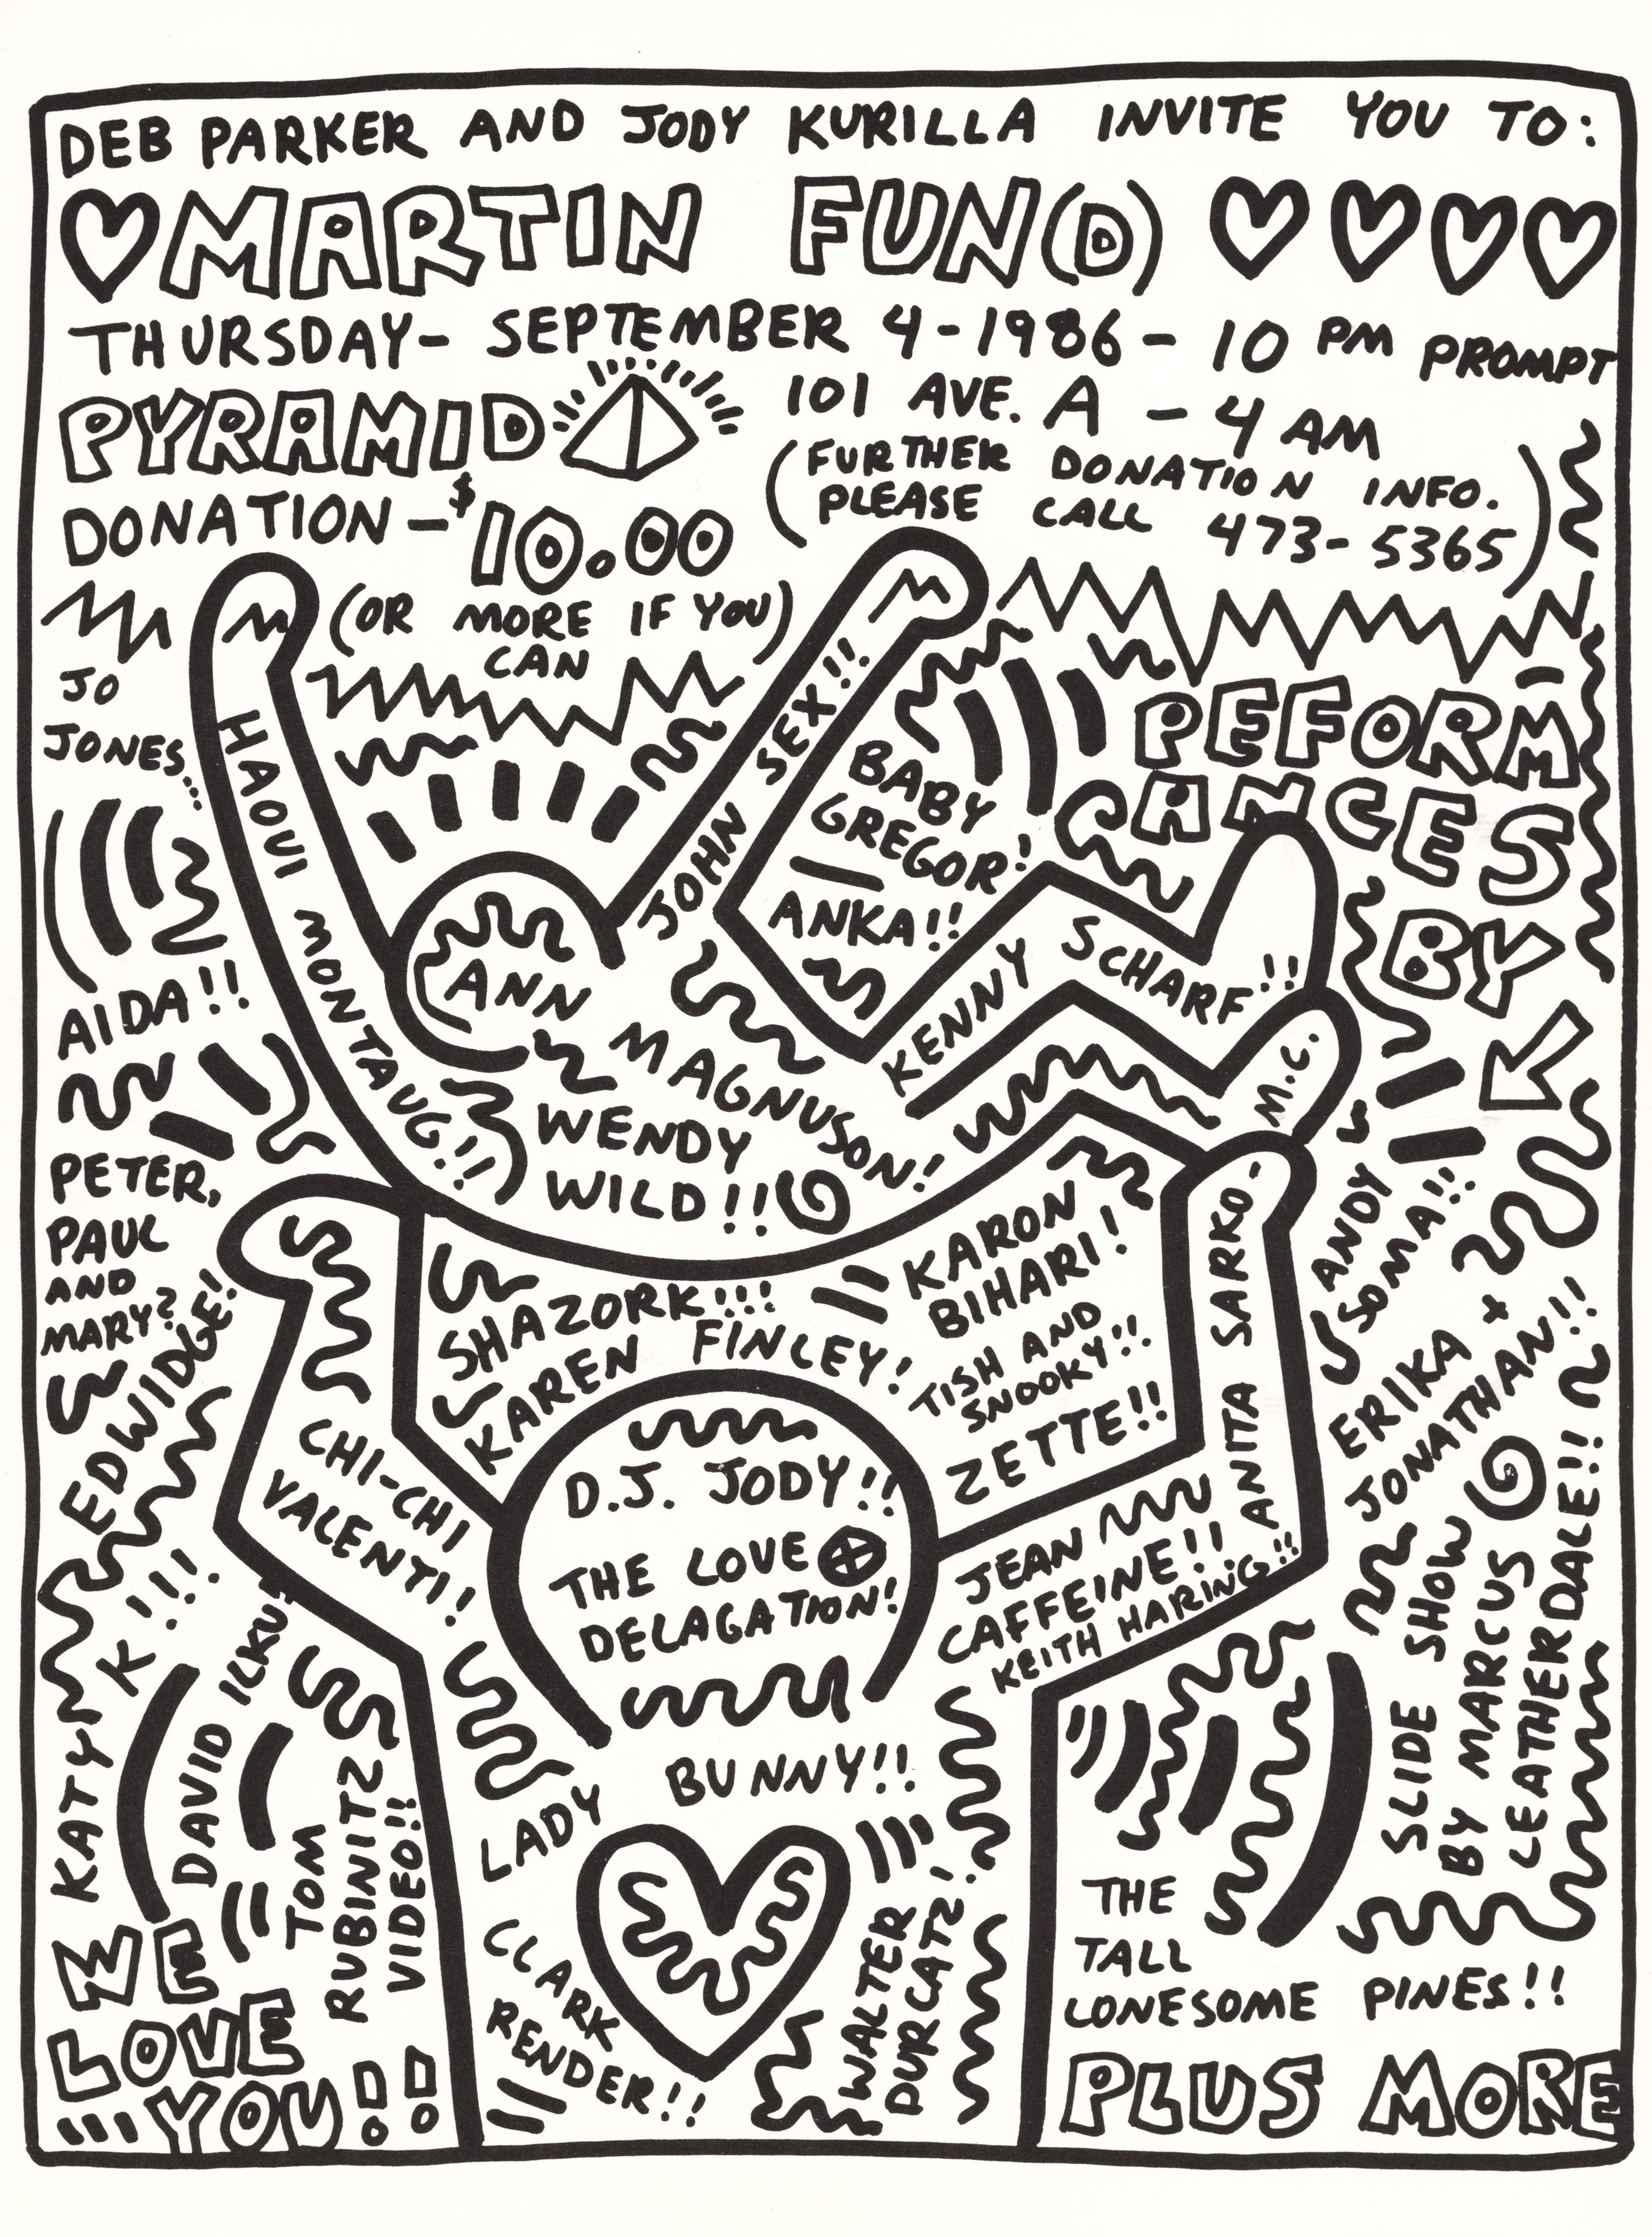 Keith Haring, Andy Warhol 1986 :
Rare, très recherché, faire-part / affiche pliante surdimensionnée de 1986 illustrée par Keith Haring & Andy Warhol (verso). Cette œuvre rarement disponible a été illustrée par Haring et Warhol à l'occasion de :